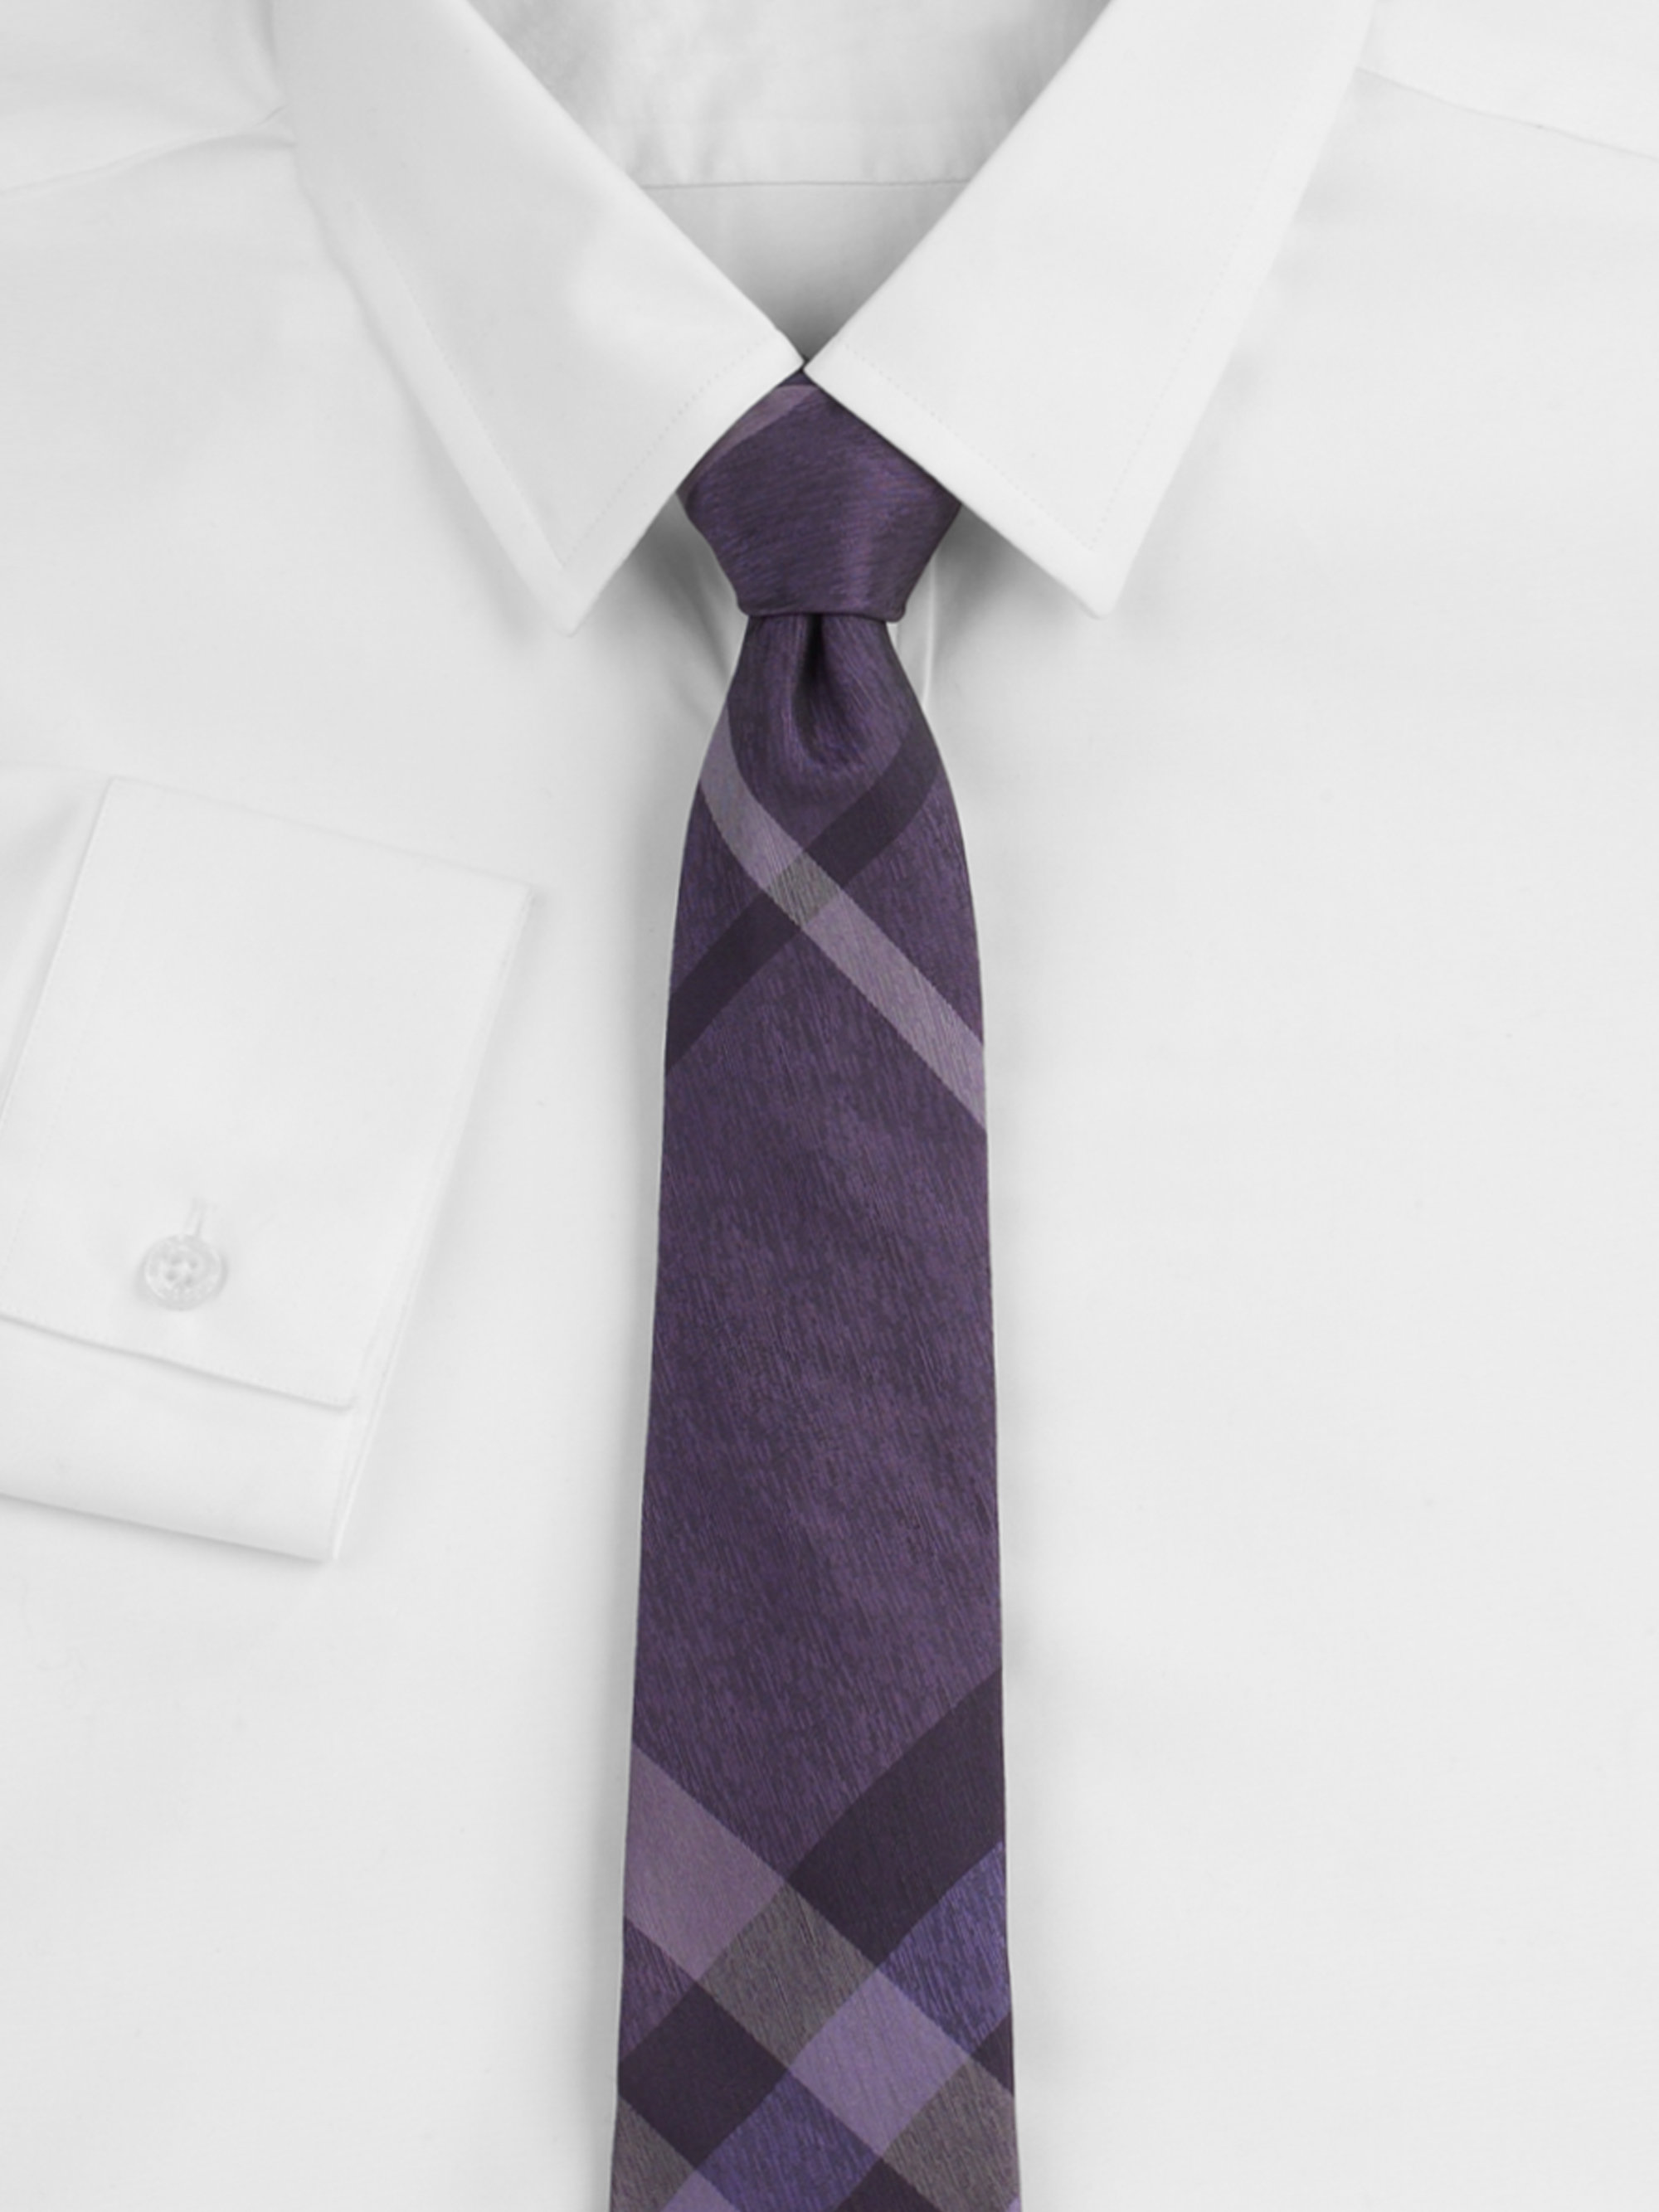 AJh,purple tie,hrdsindia.org